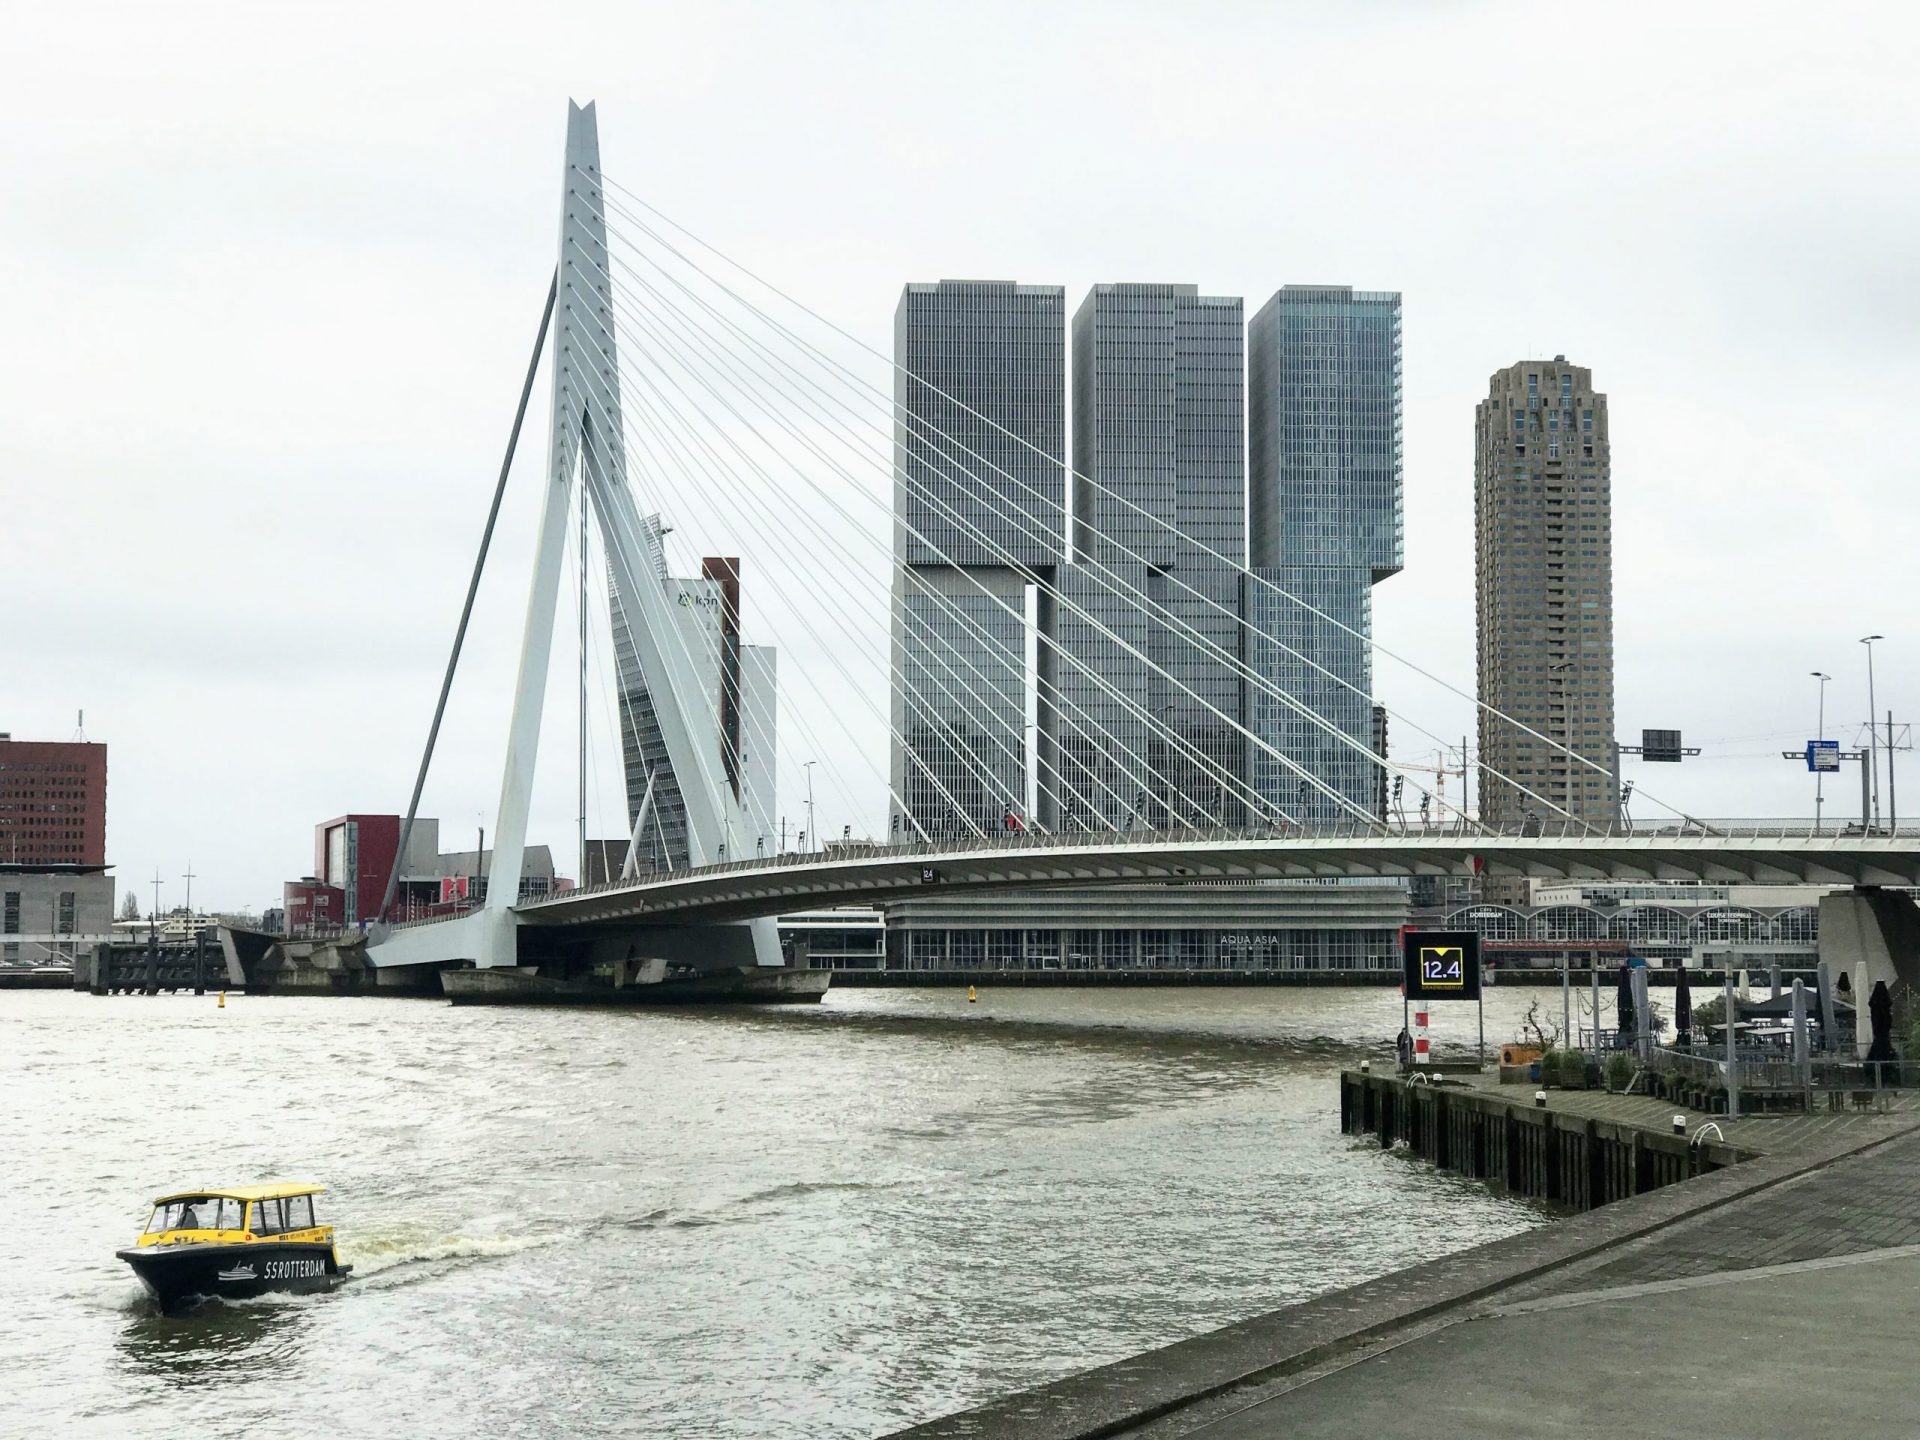 erasmusbrug wilhelminapier kop van zuid - Things to Do in Rotterdam's Kop van Zuid & Wilhelminapier